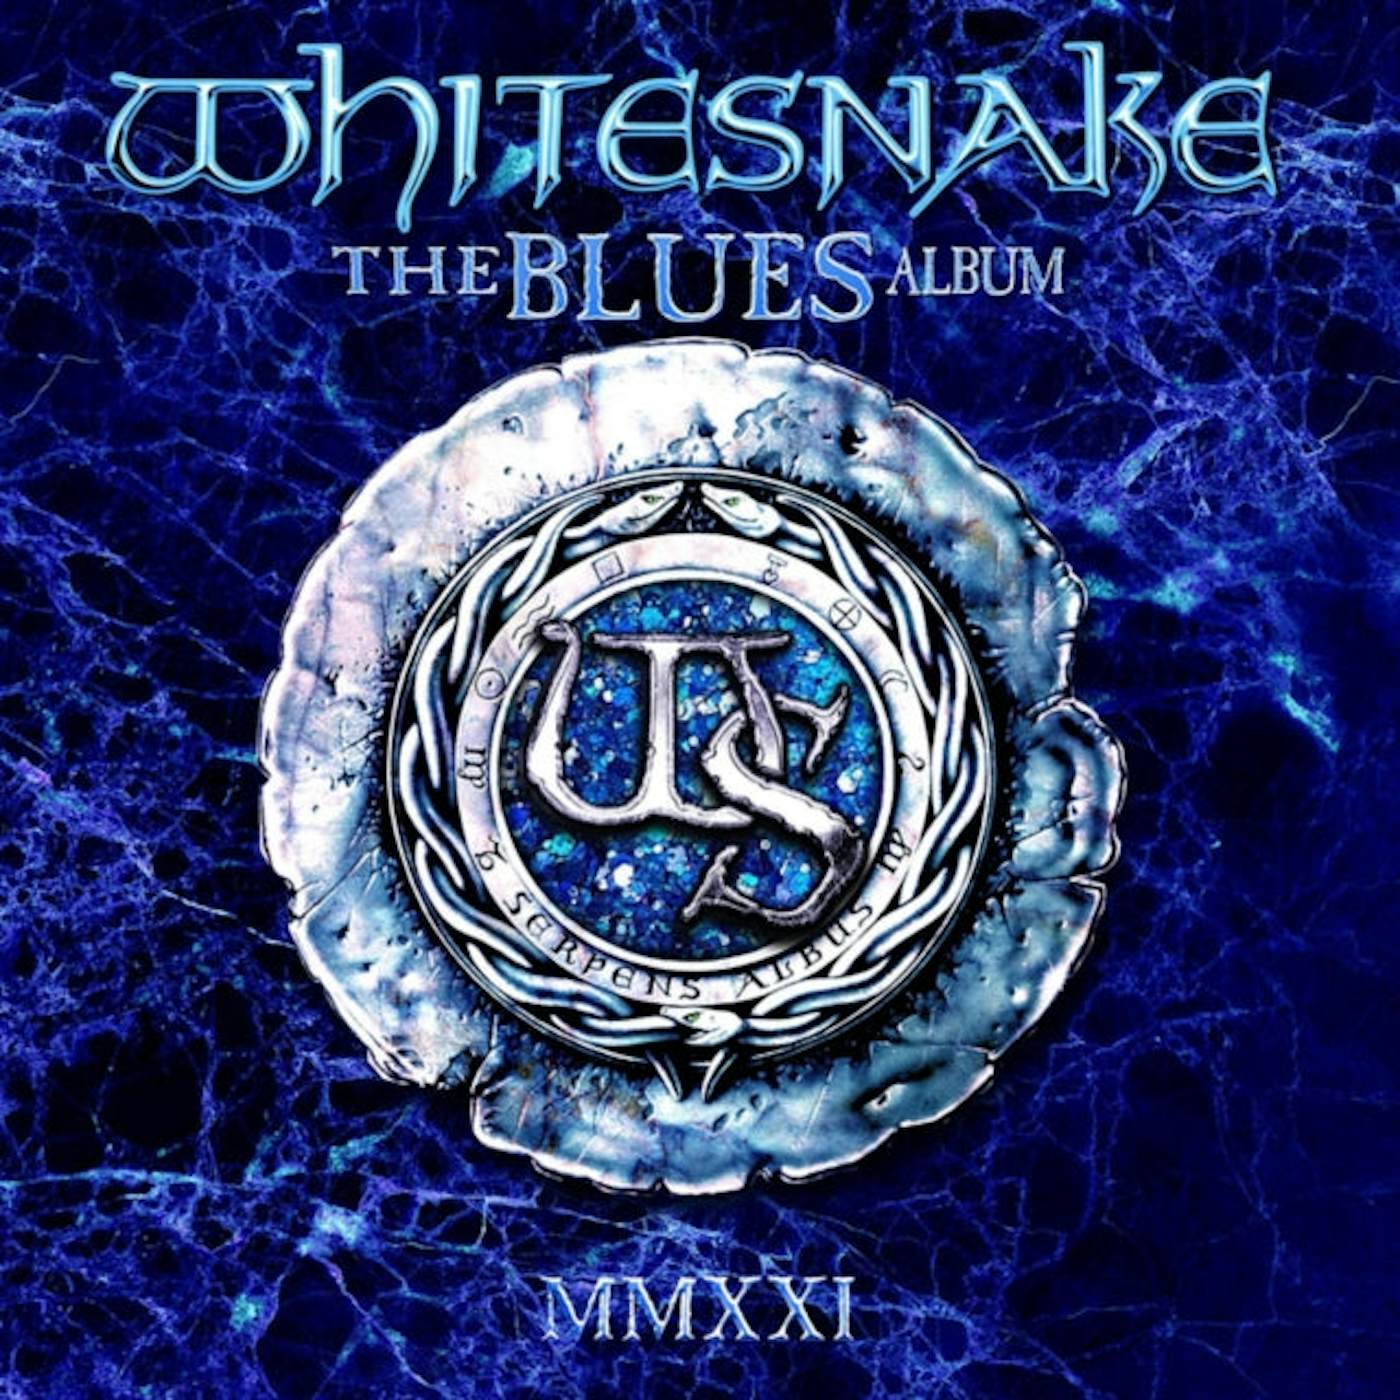 Whitesnake LP Vinyl Record - The Blues Album (Ocean Blue Vinyl)